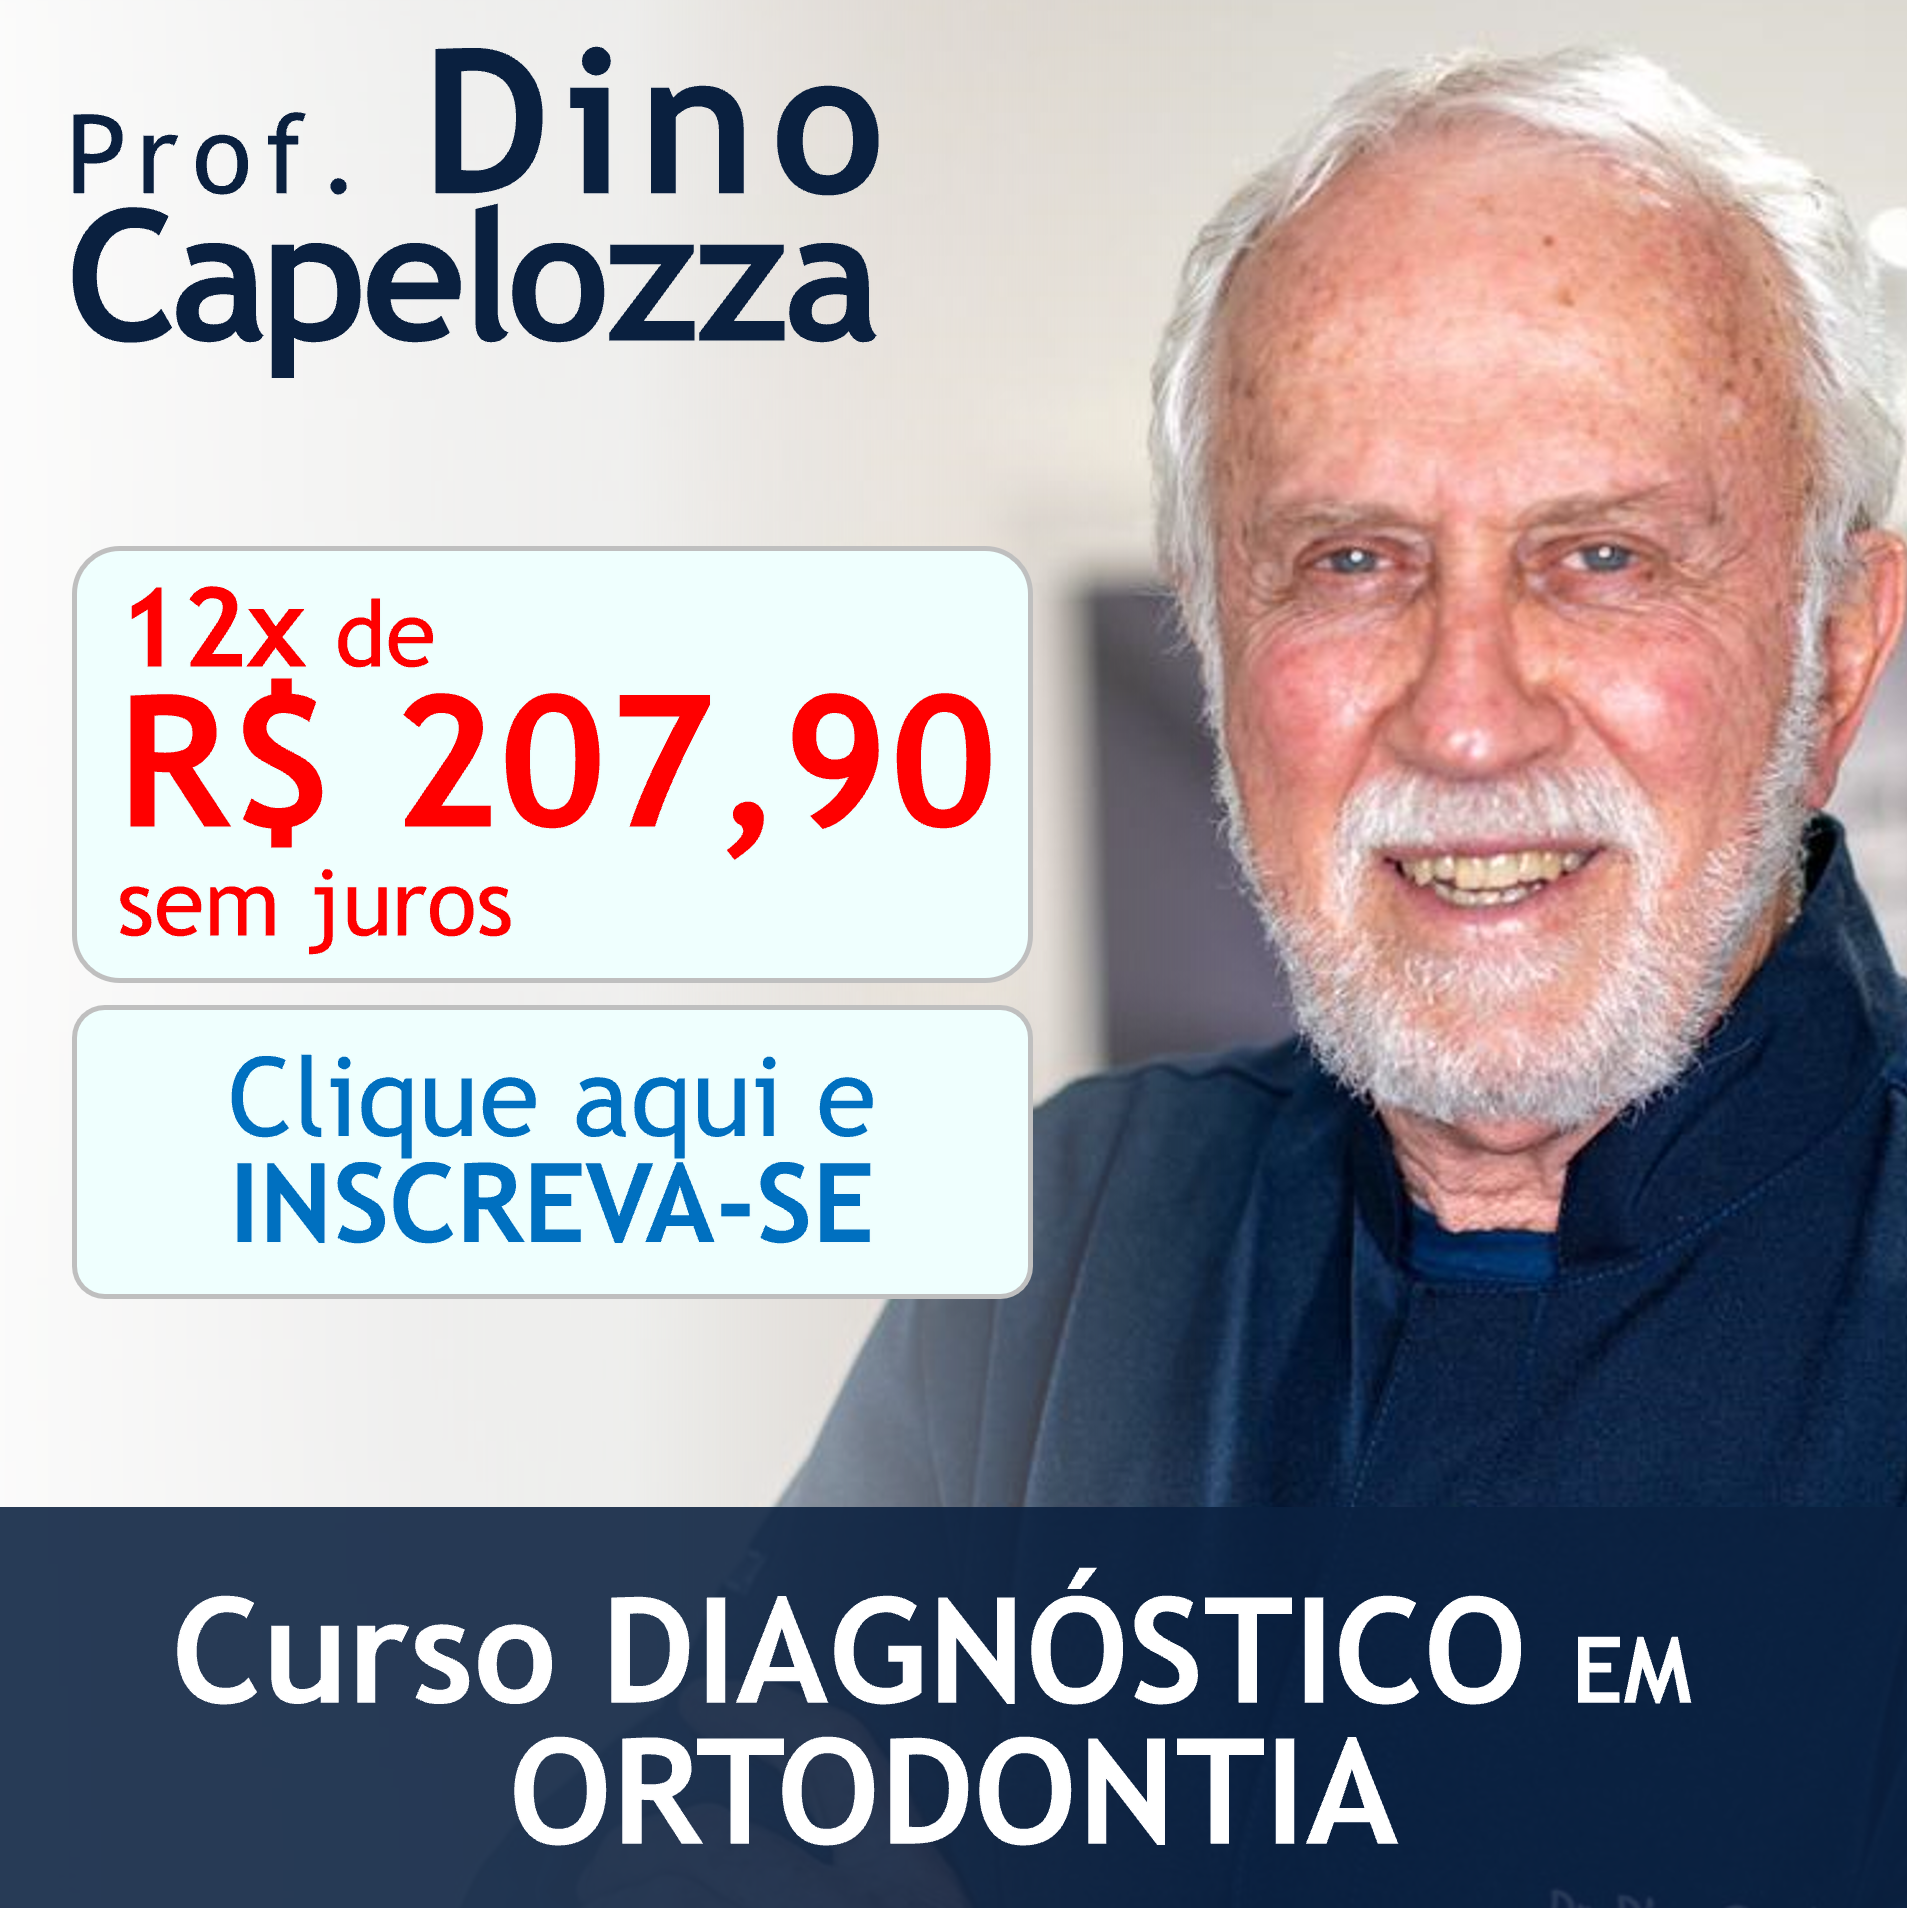 Curso DIAGNÓSTICO EM ORTODONTIA com Prof. Dino Capelozza